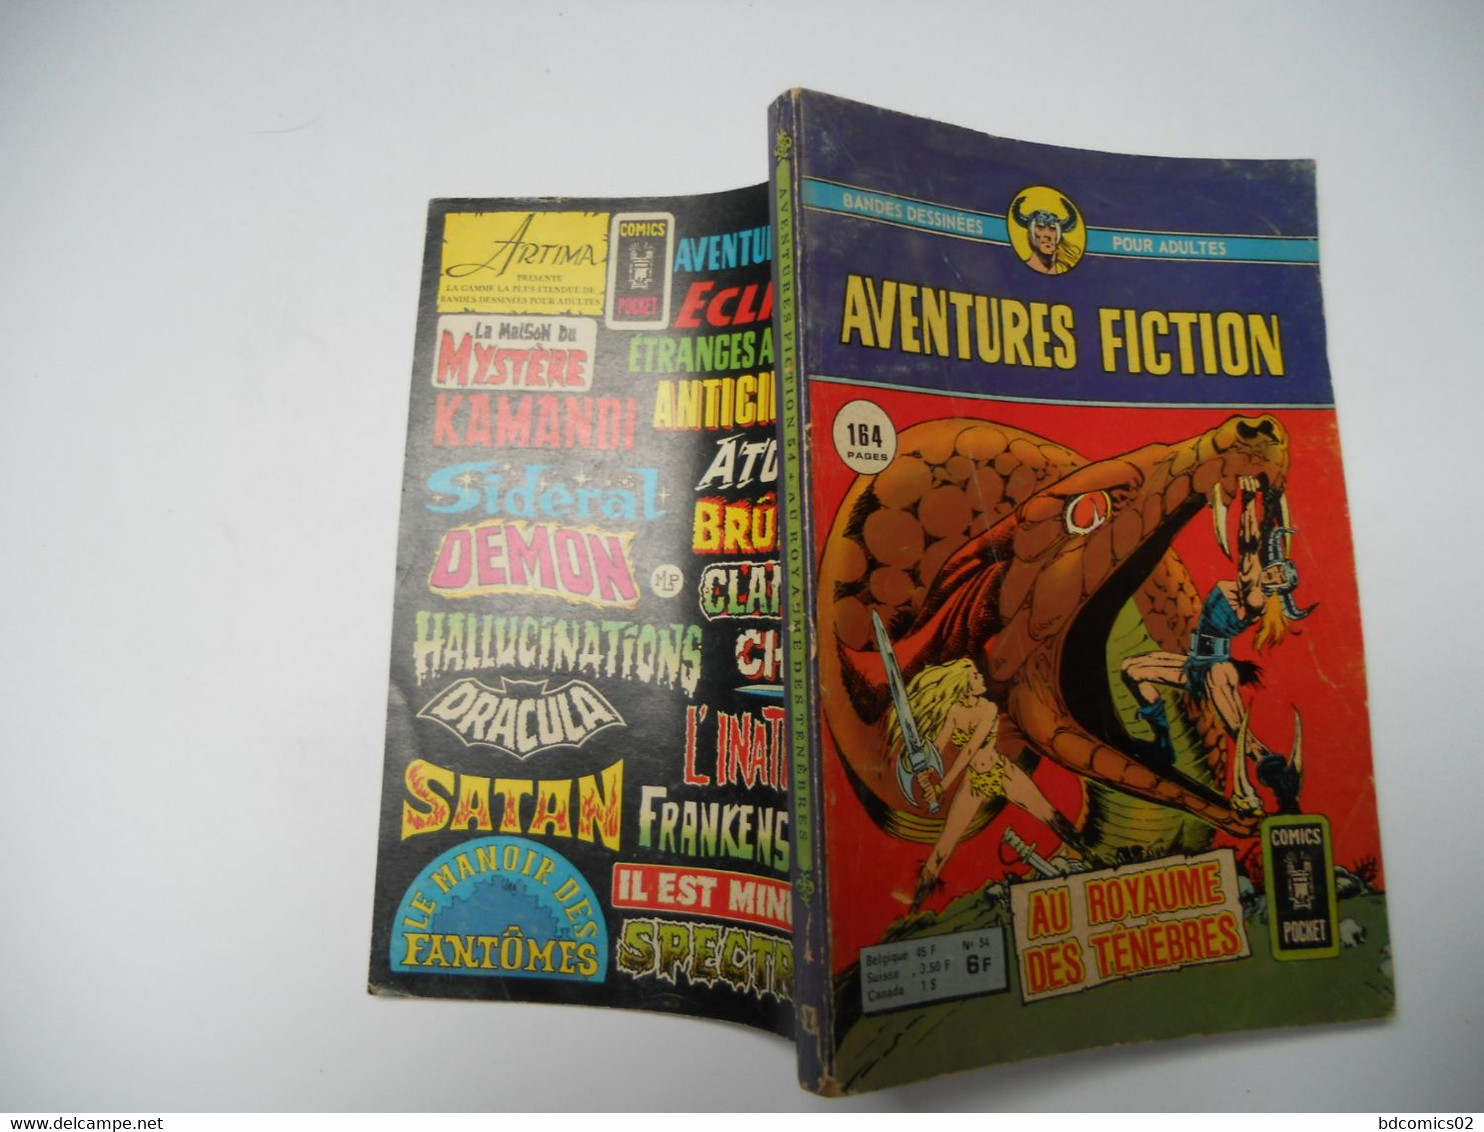 Aventures Fiction N° 54 : Au Royaume Des Ténèbres -  ARTIMA  COMICS POCKET 1976 C2 - Aventures Fiction